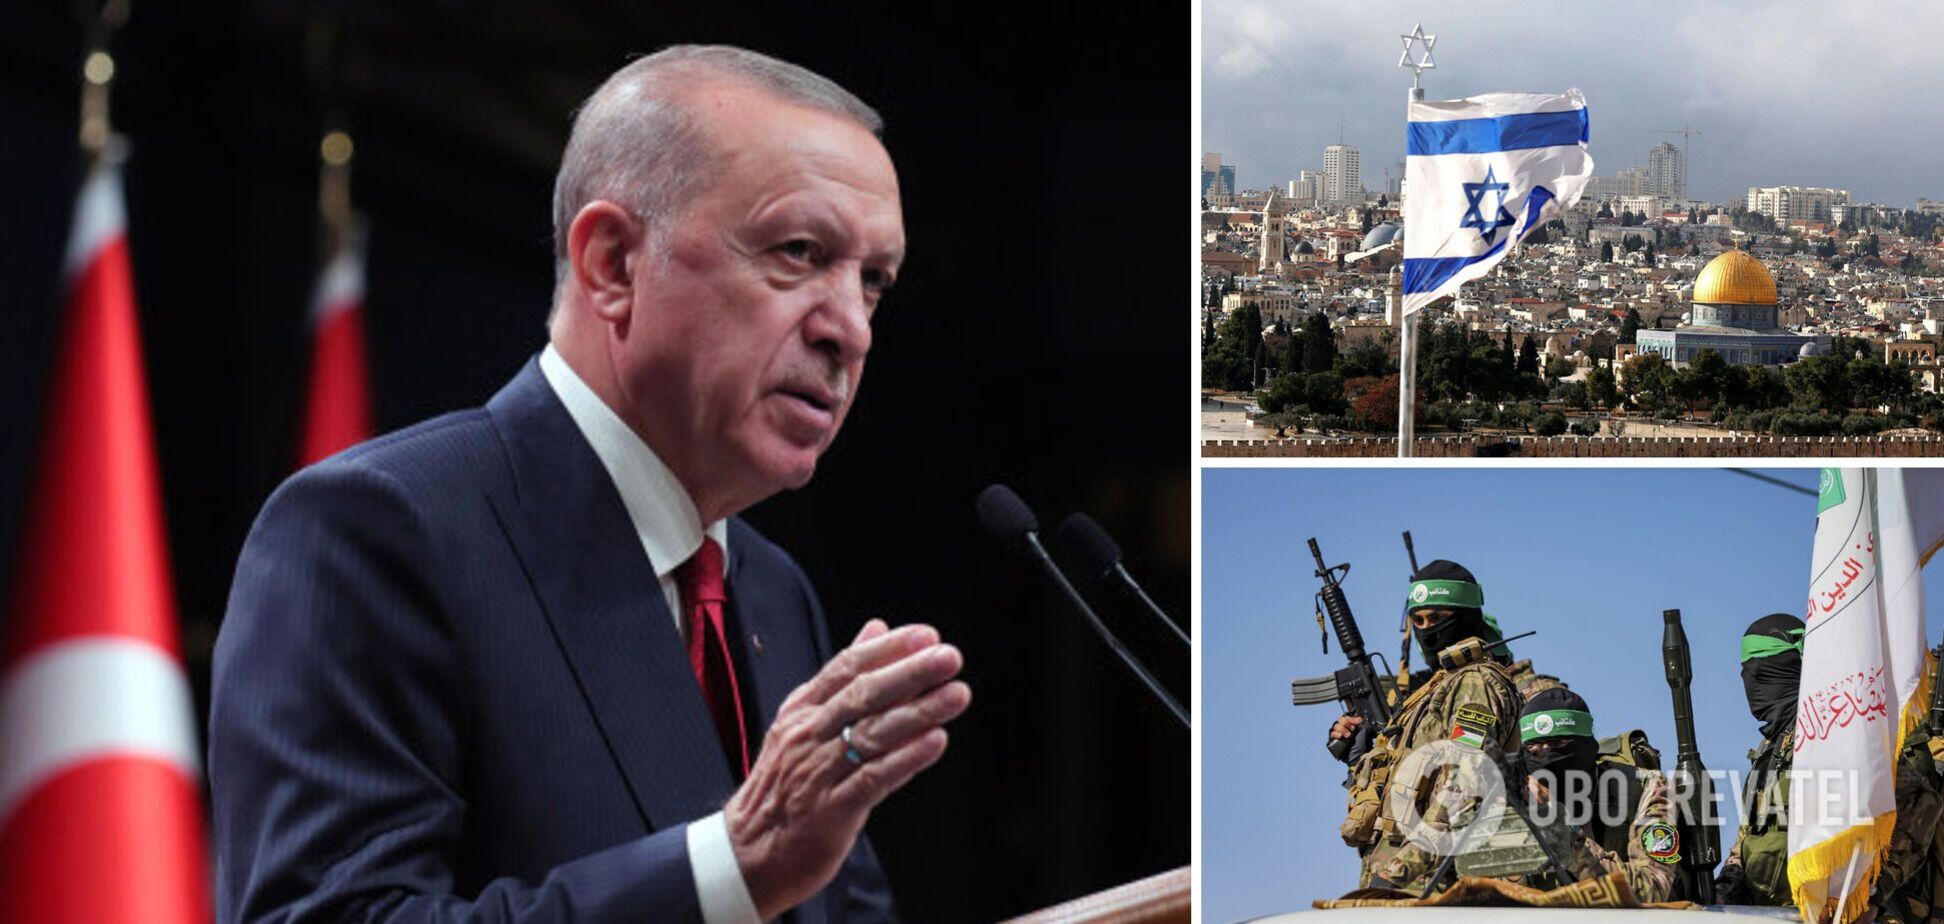 Лють султана та мрії про імперію: агресивні заяви Ердогана проти США та Ізраїлю можуть призвести до розладу в НАТО